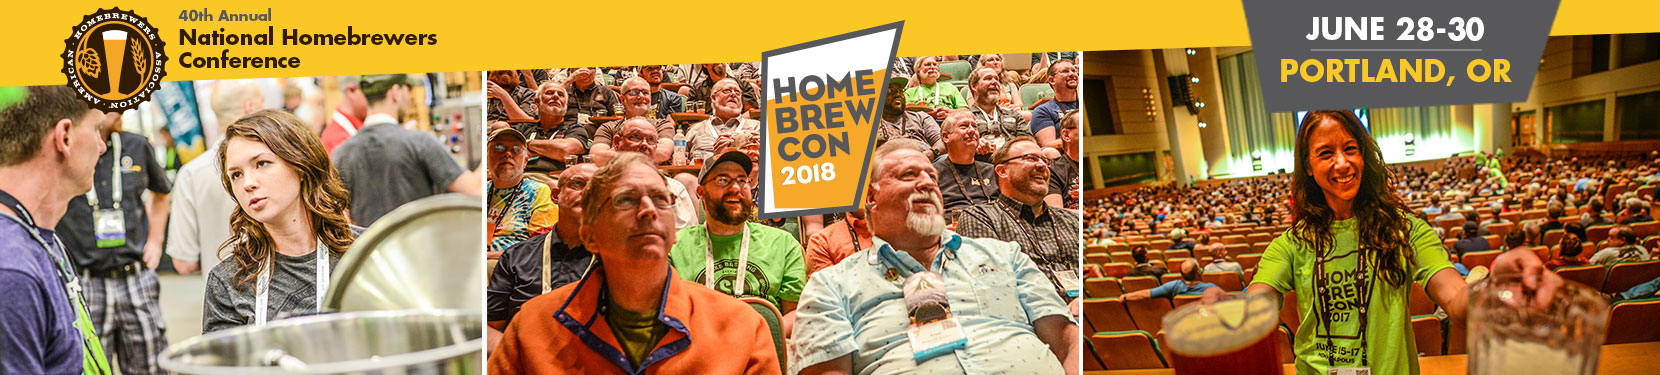 Homebrew Con 2018